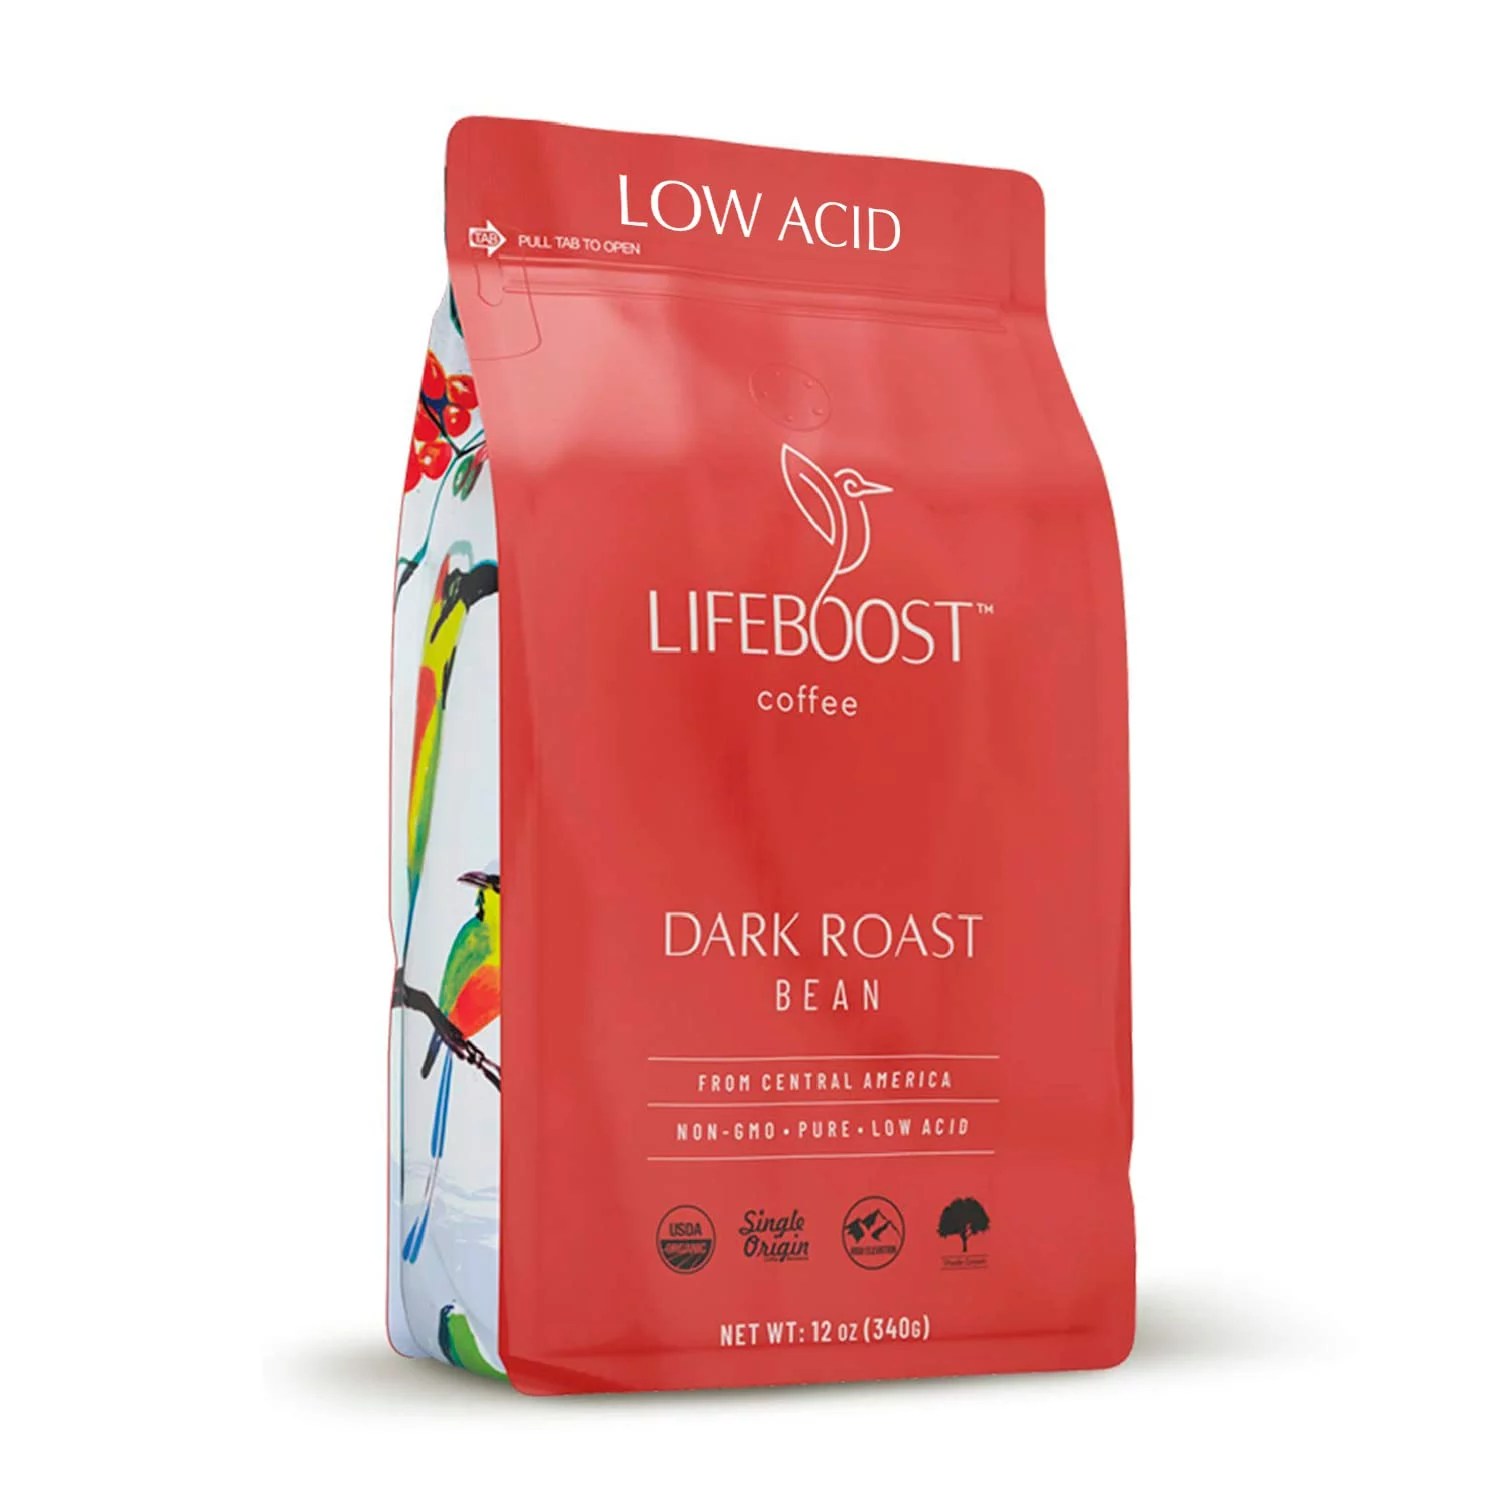 Lifeboost low acid dark roast coffee